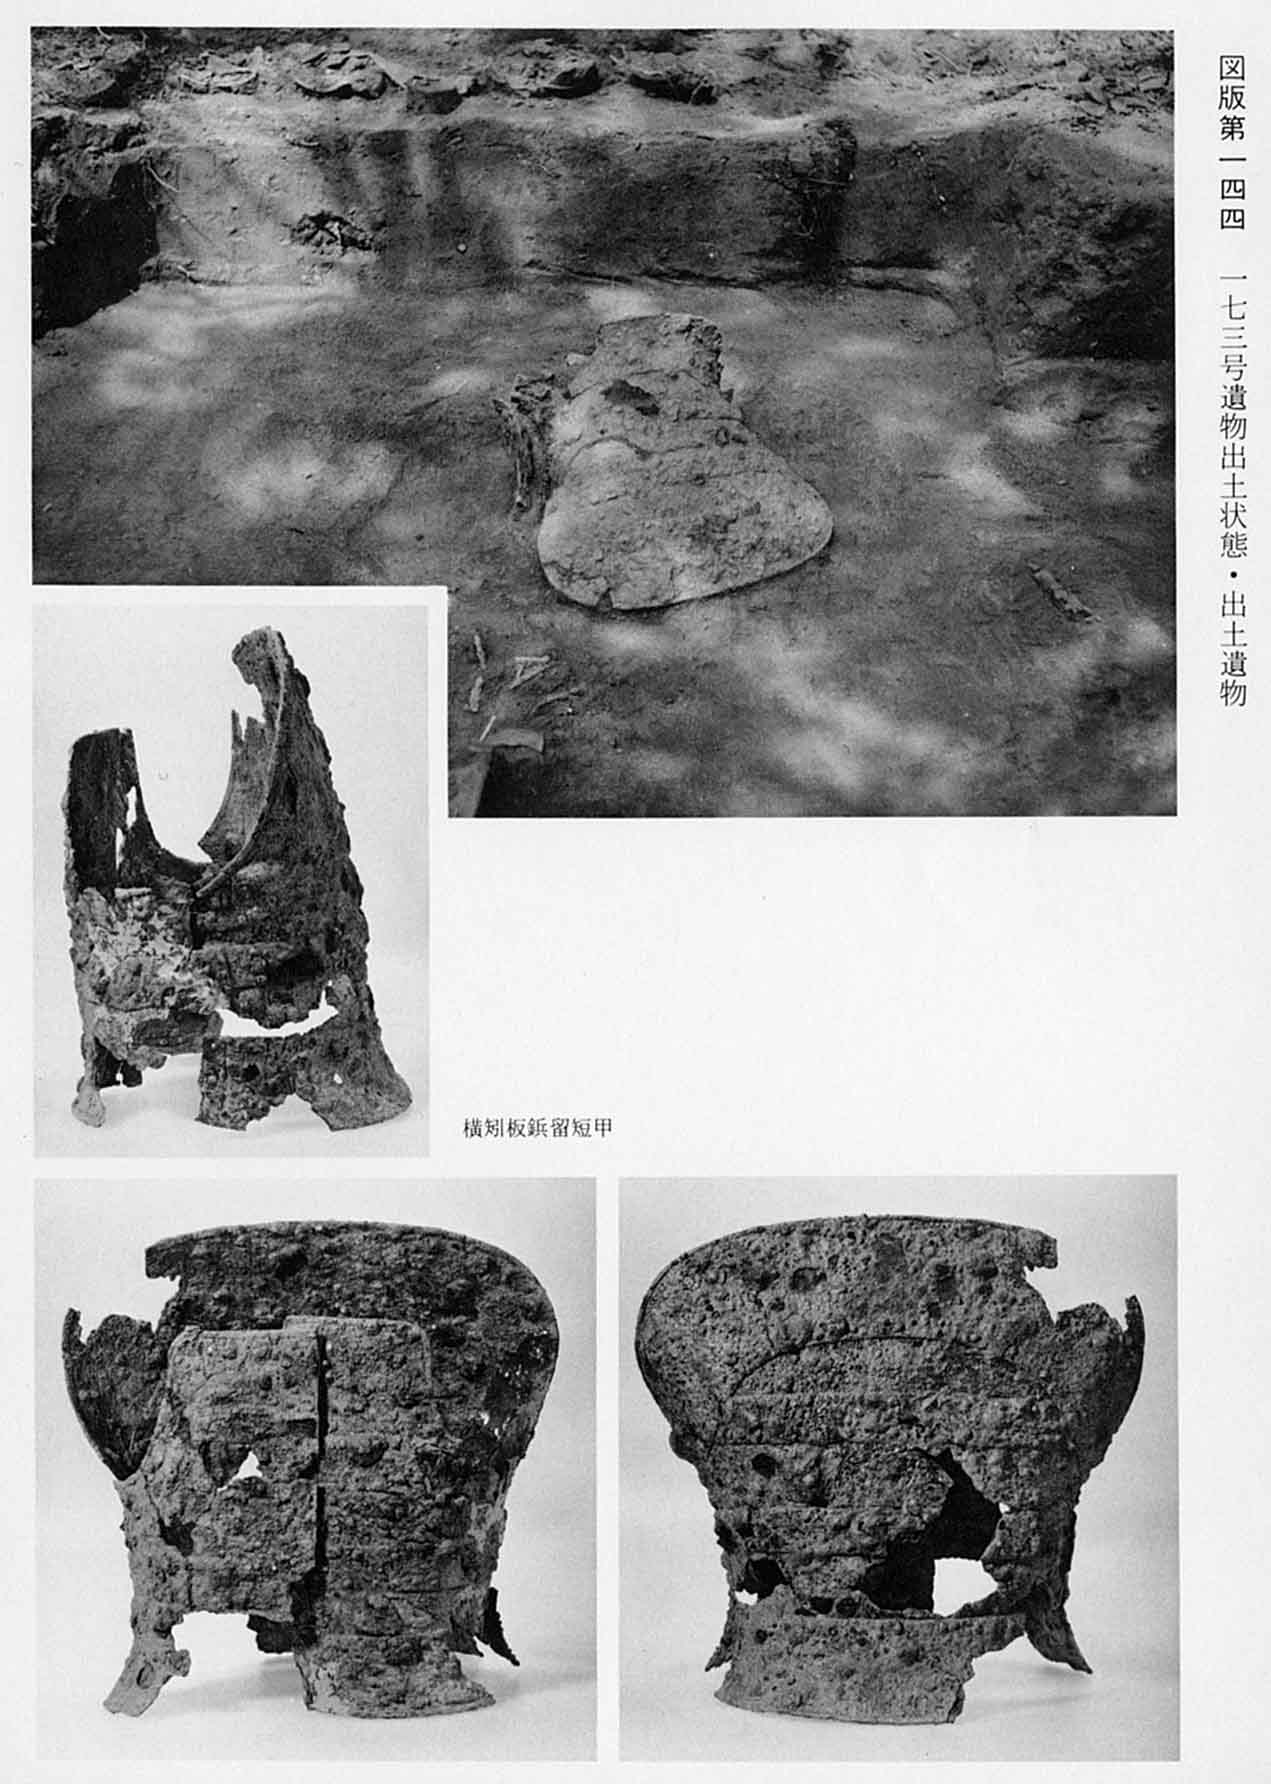 出土された状態の鎧と、革の甲が3枚撮られている写真（図版144 173号遺物出土状態・出土遺物）